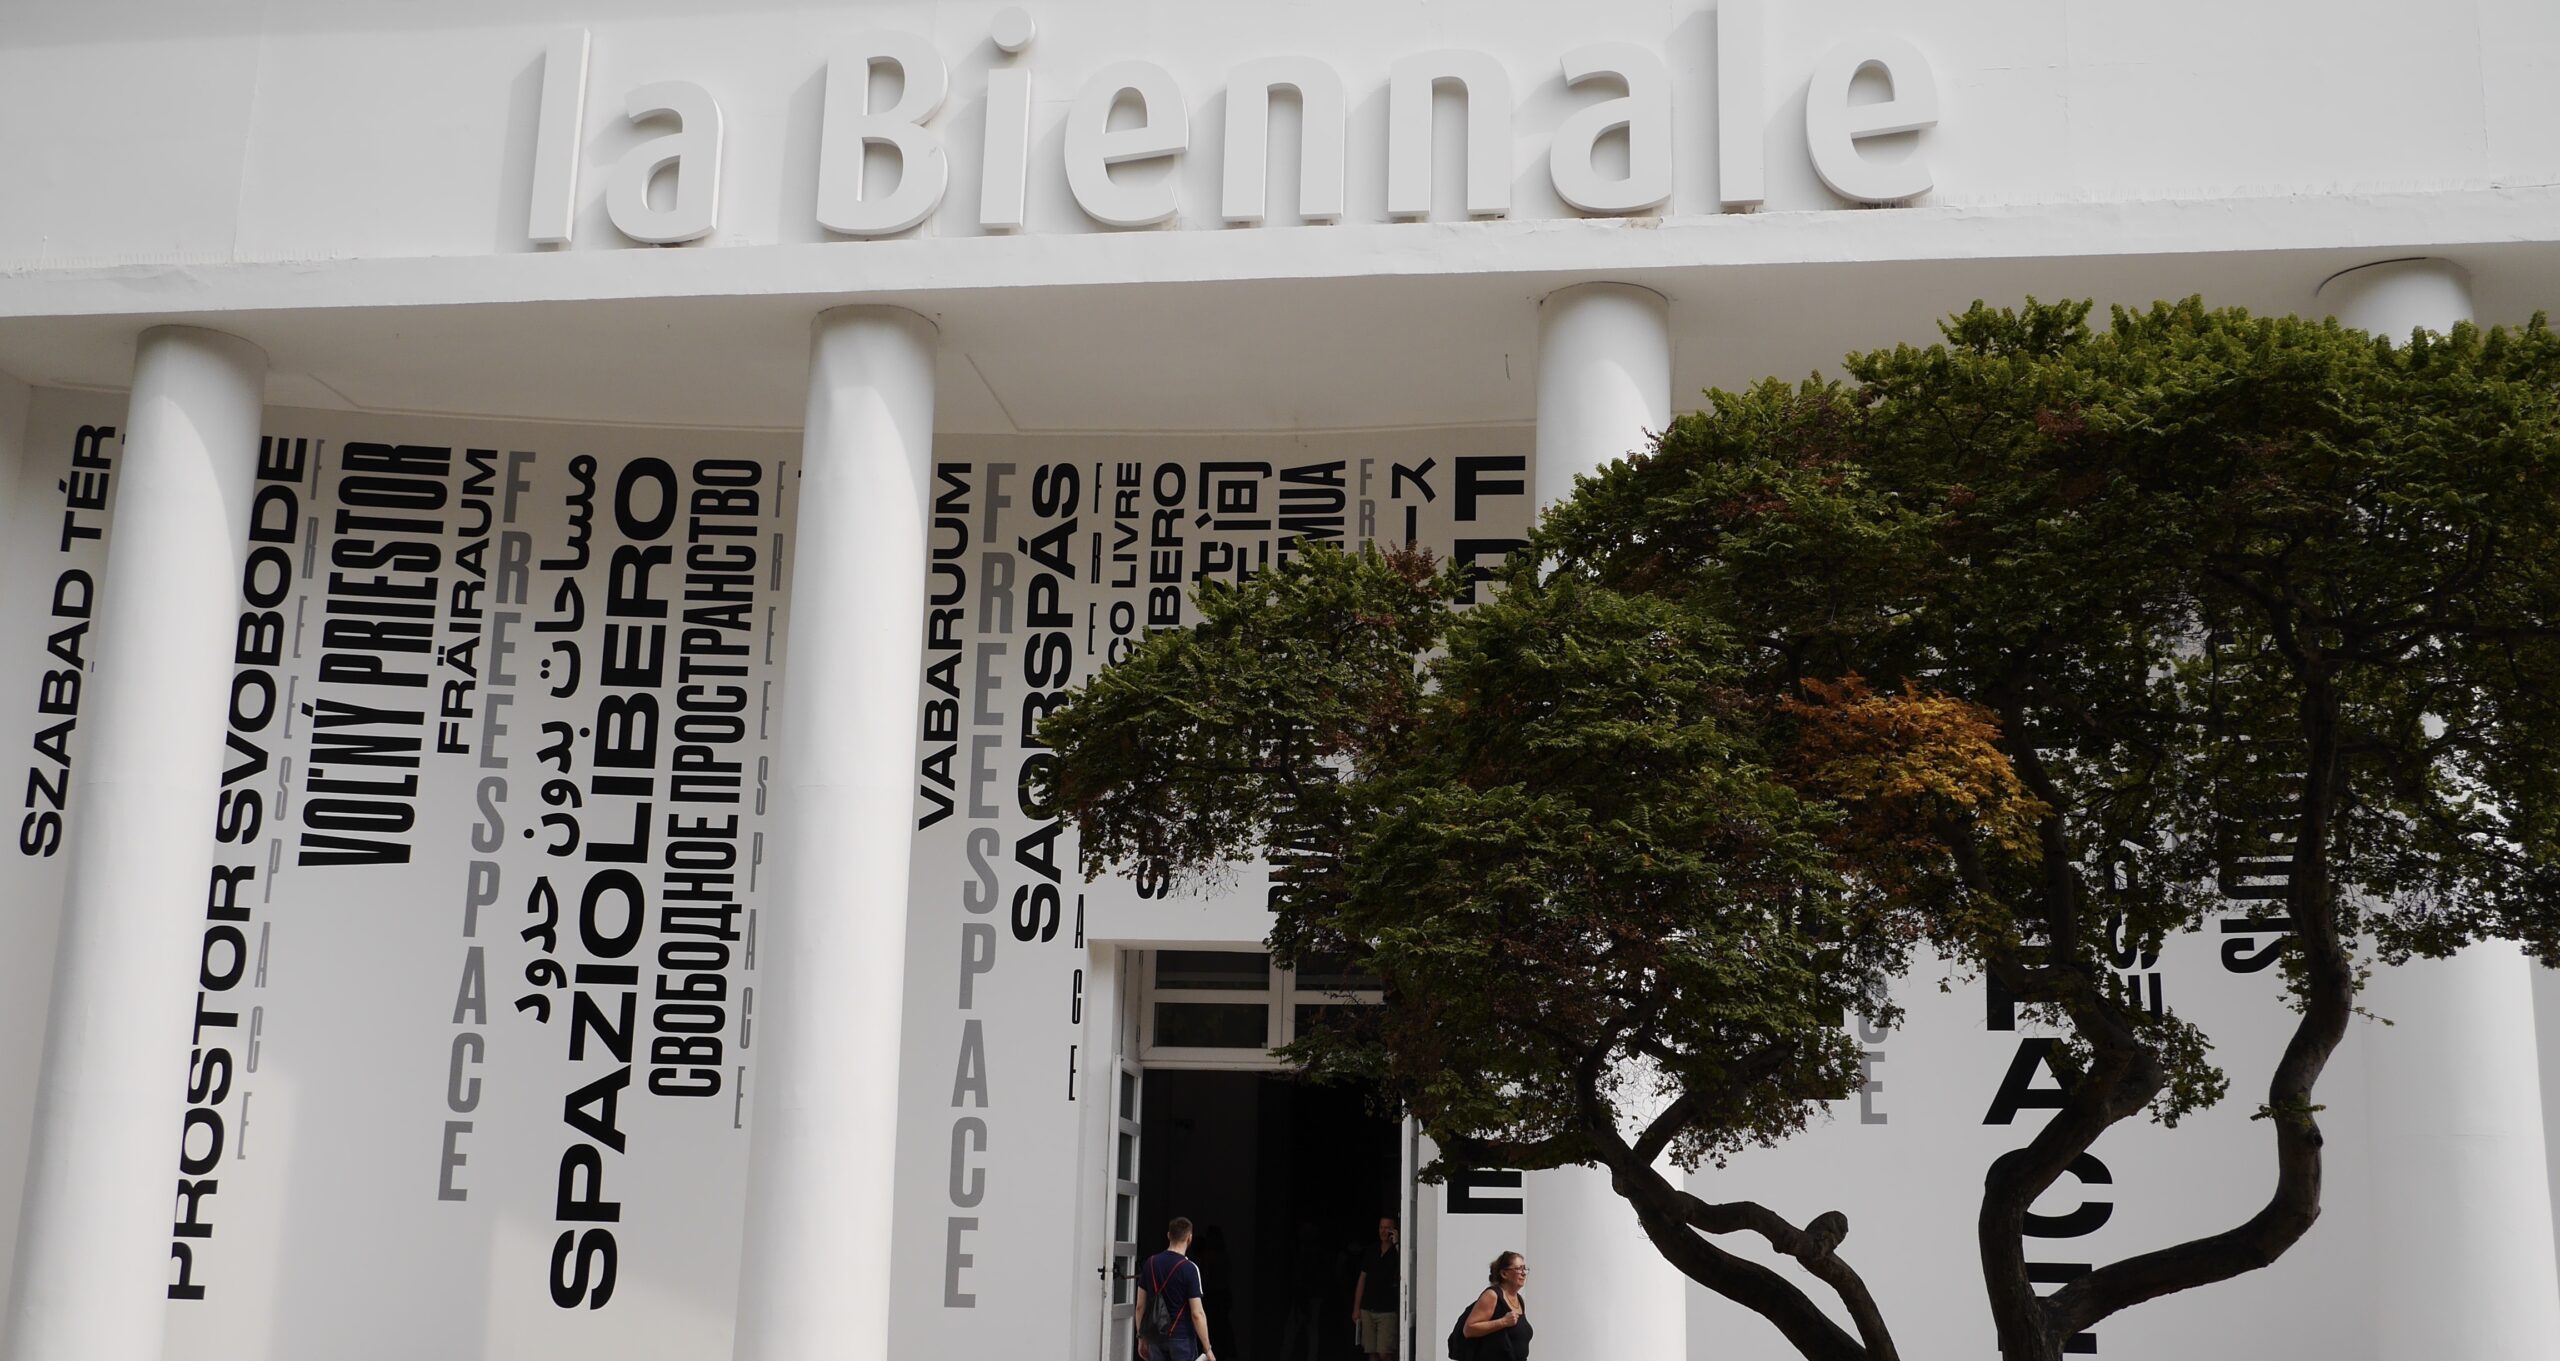 La Biennale